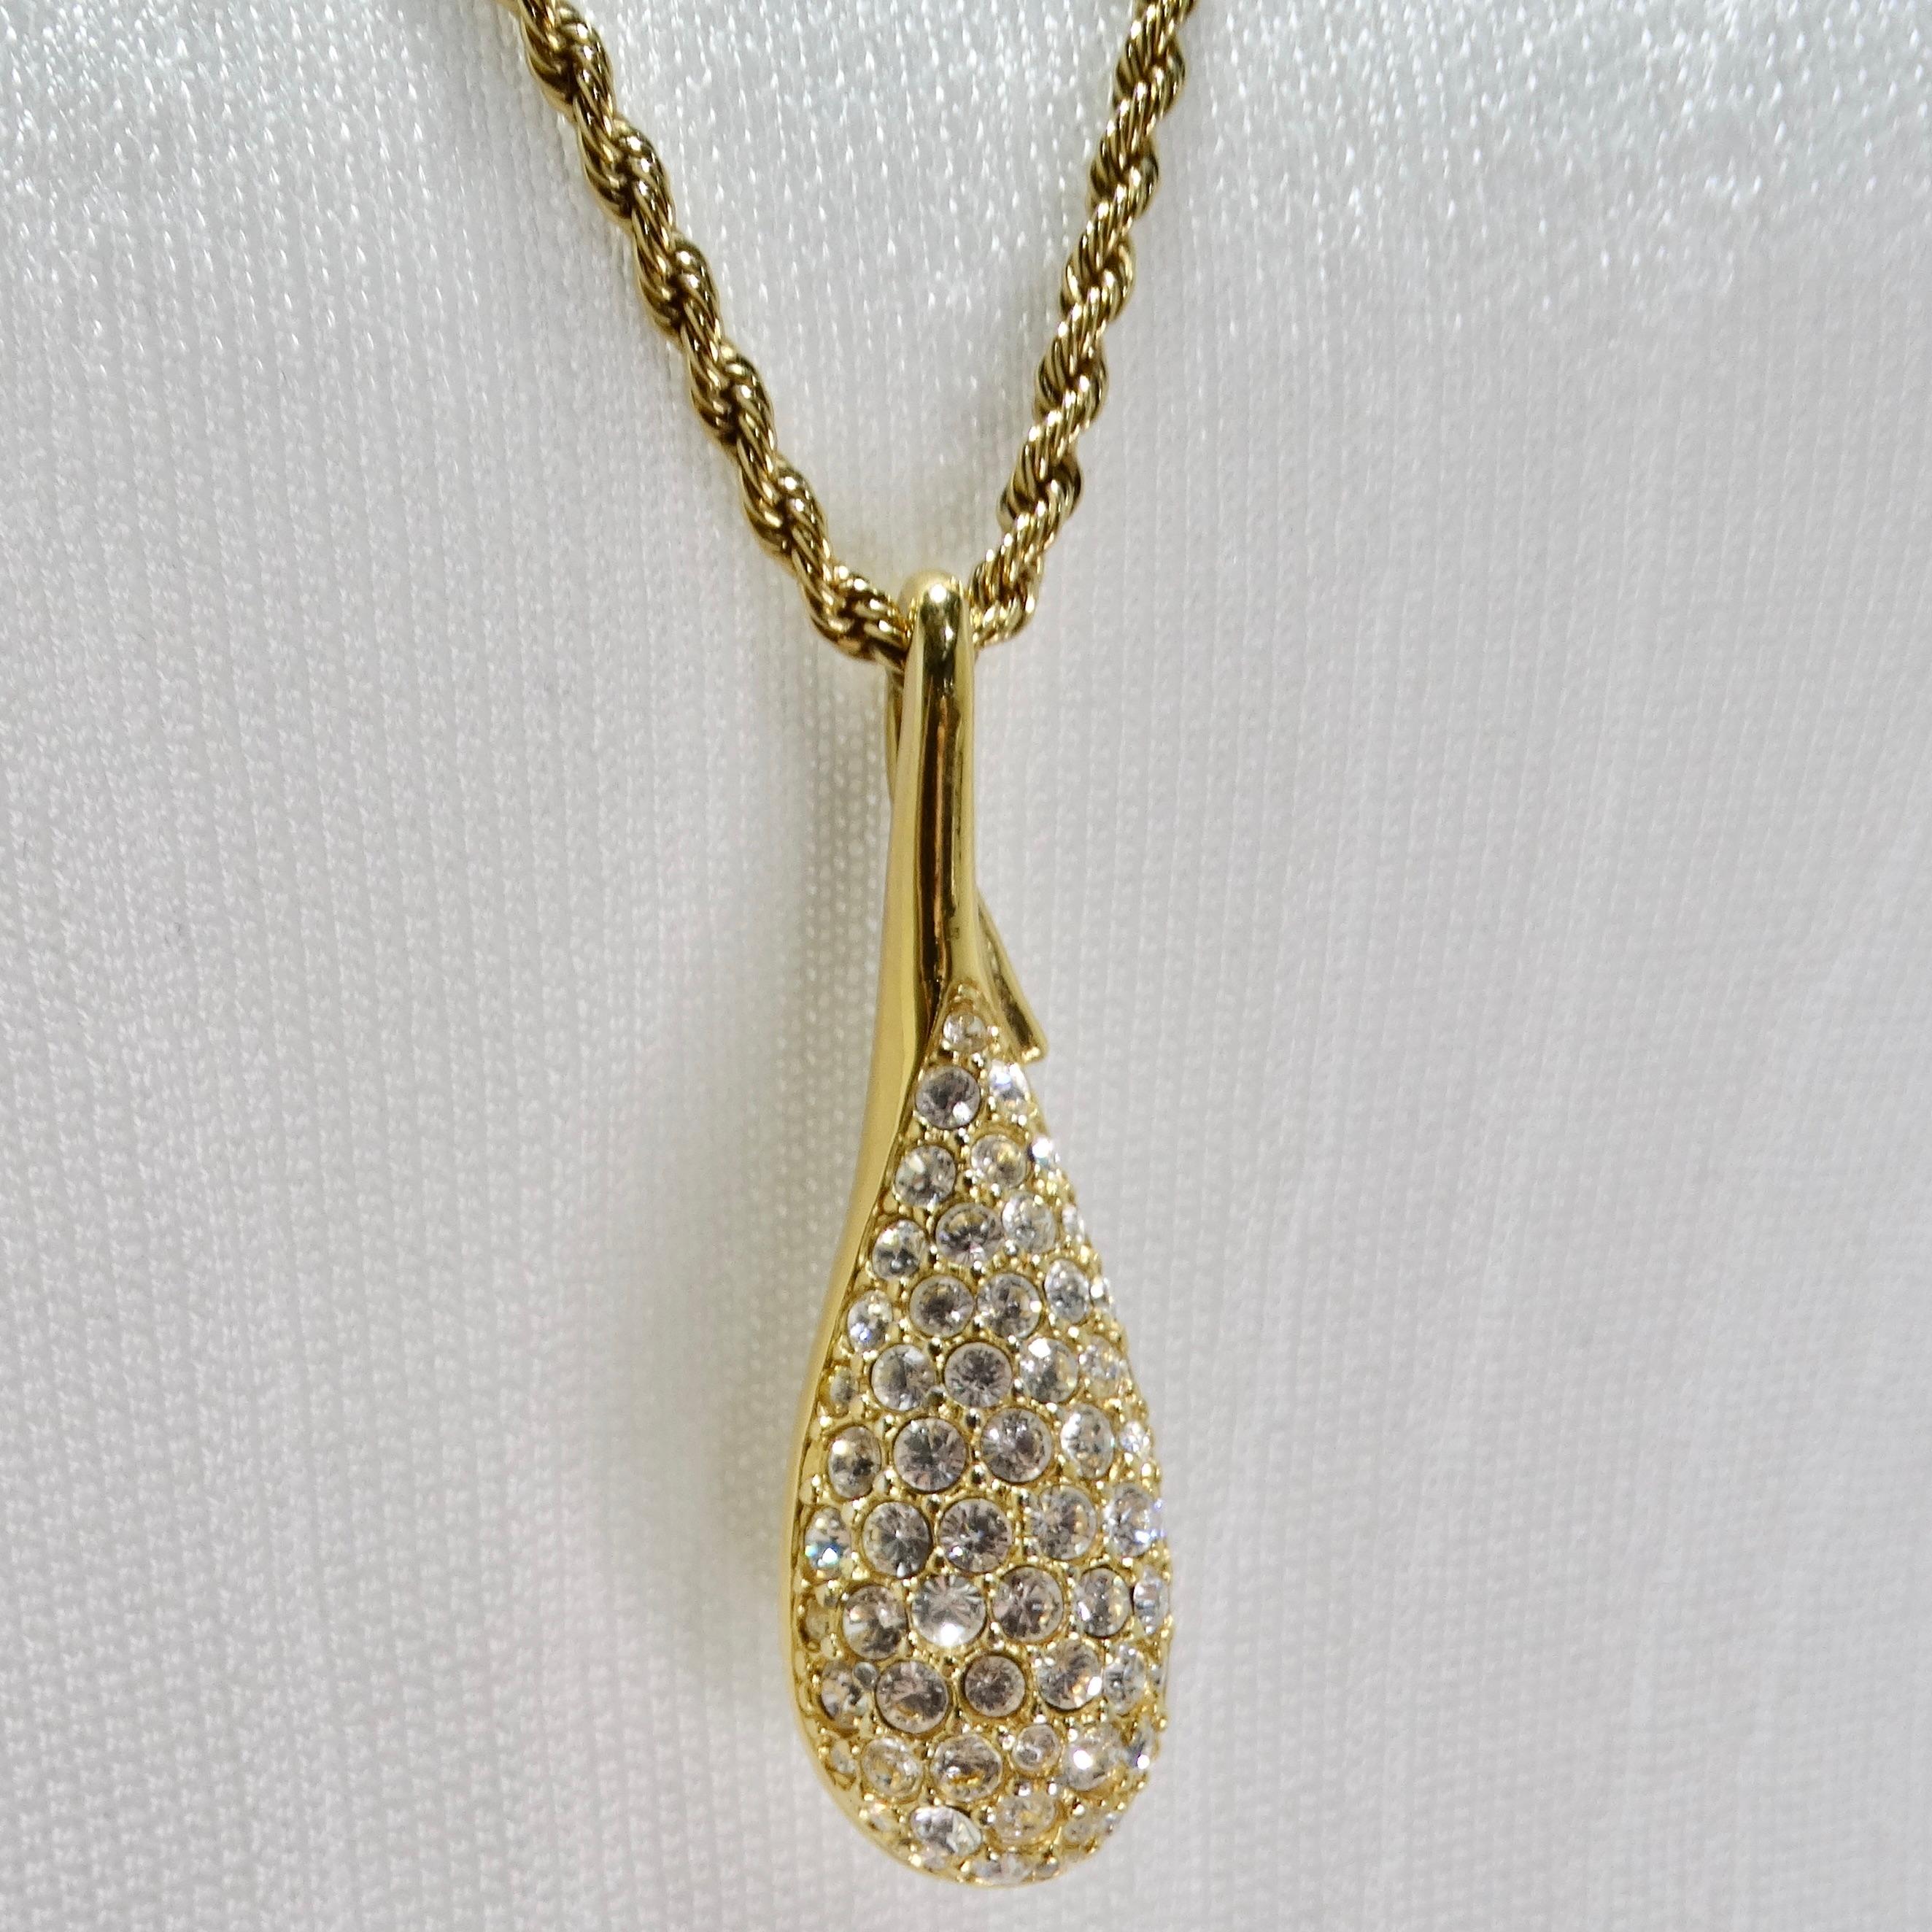 Le collier pendentif en cristal plaqué or 18 carats Swarovski Vintage est une pièce glamour des années 1980 qui allie l'élégance à la brillance des strass Swarovski. Ce collier à chaîne présente un grand pendentif en forme de larme orné de strass